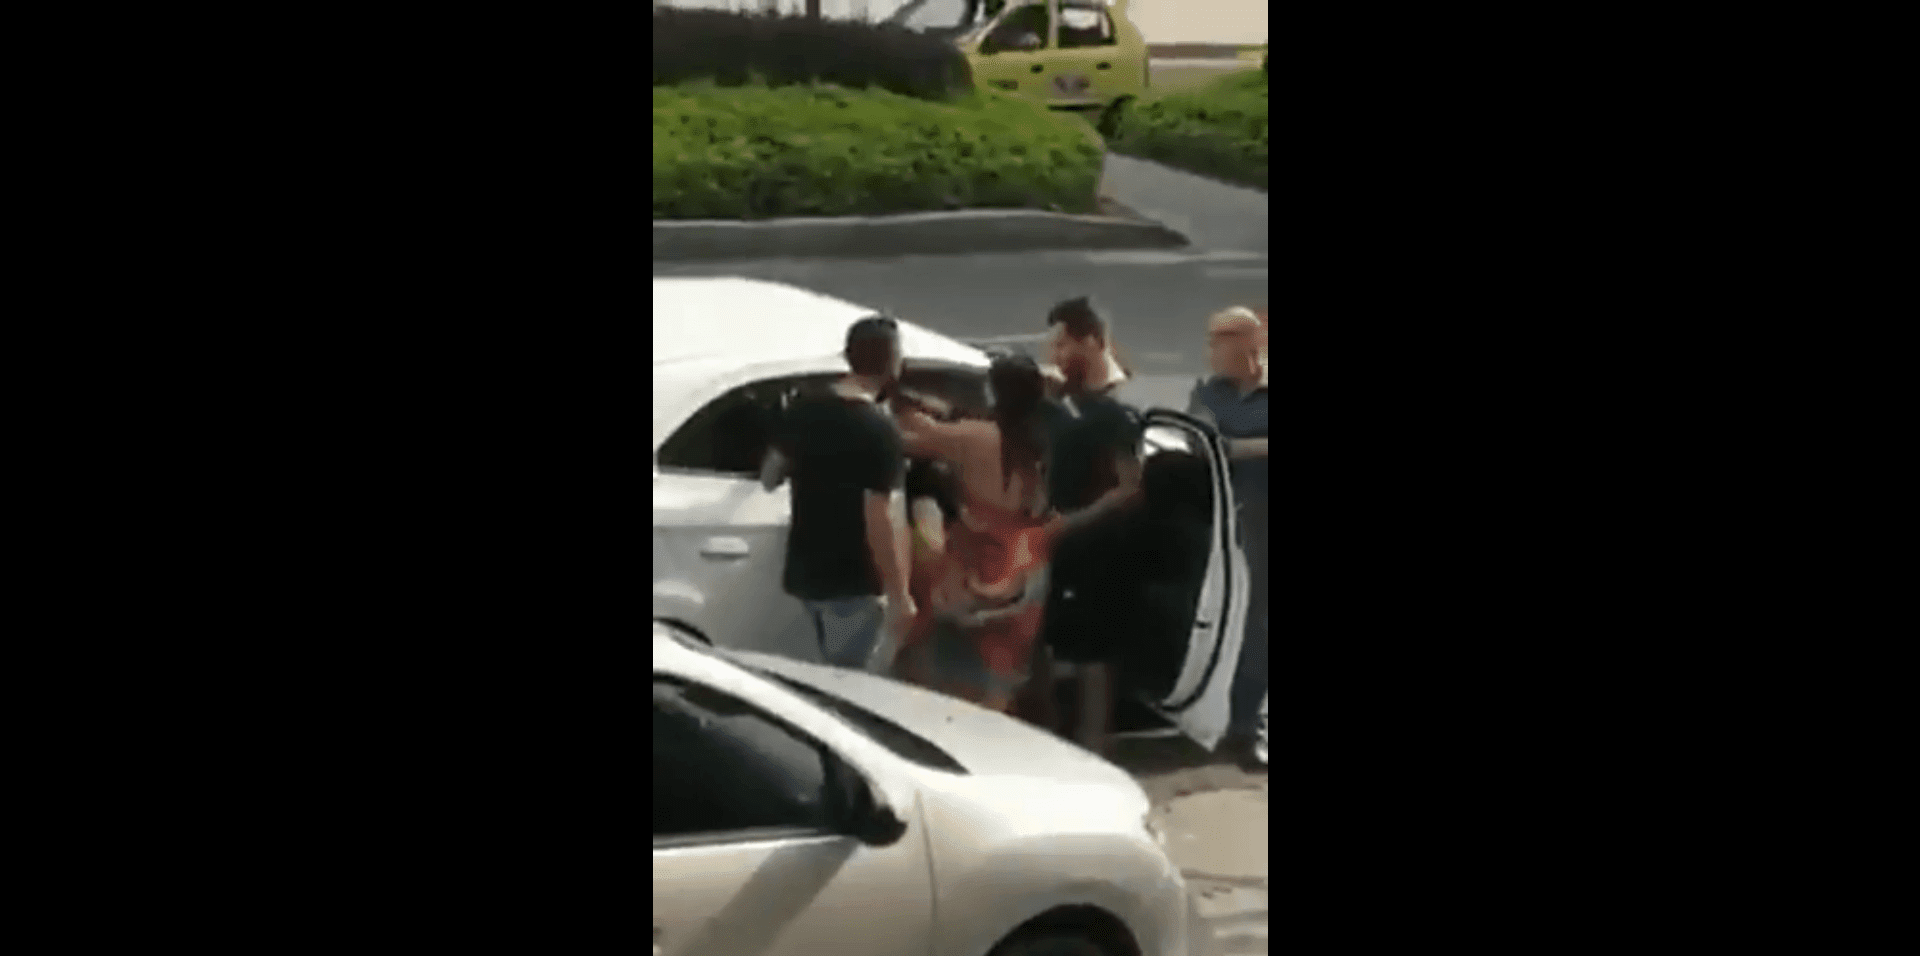 La mujer confrontó al infiel en el auto. Fuente: Twitter/anonymus_sin